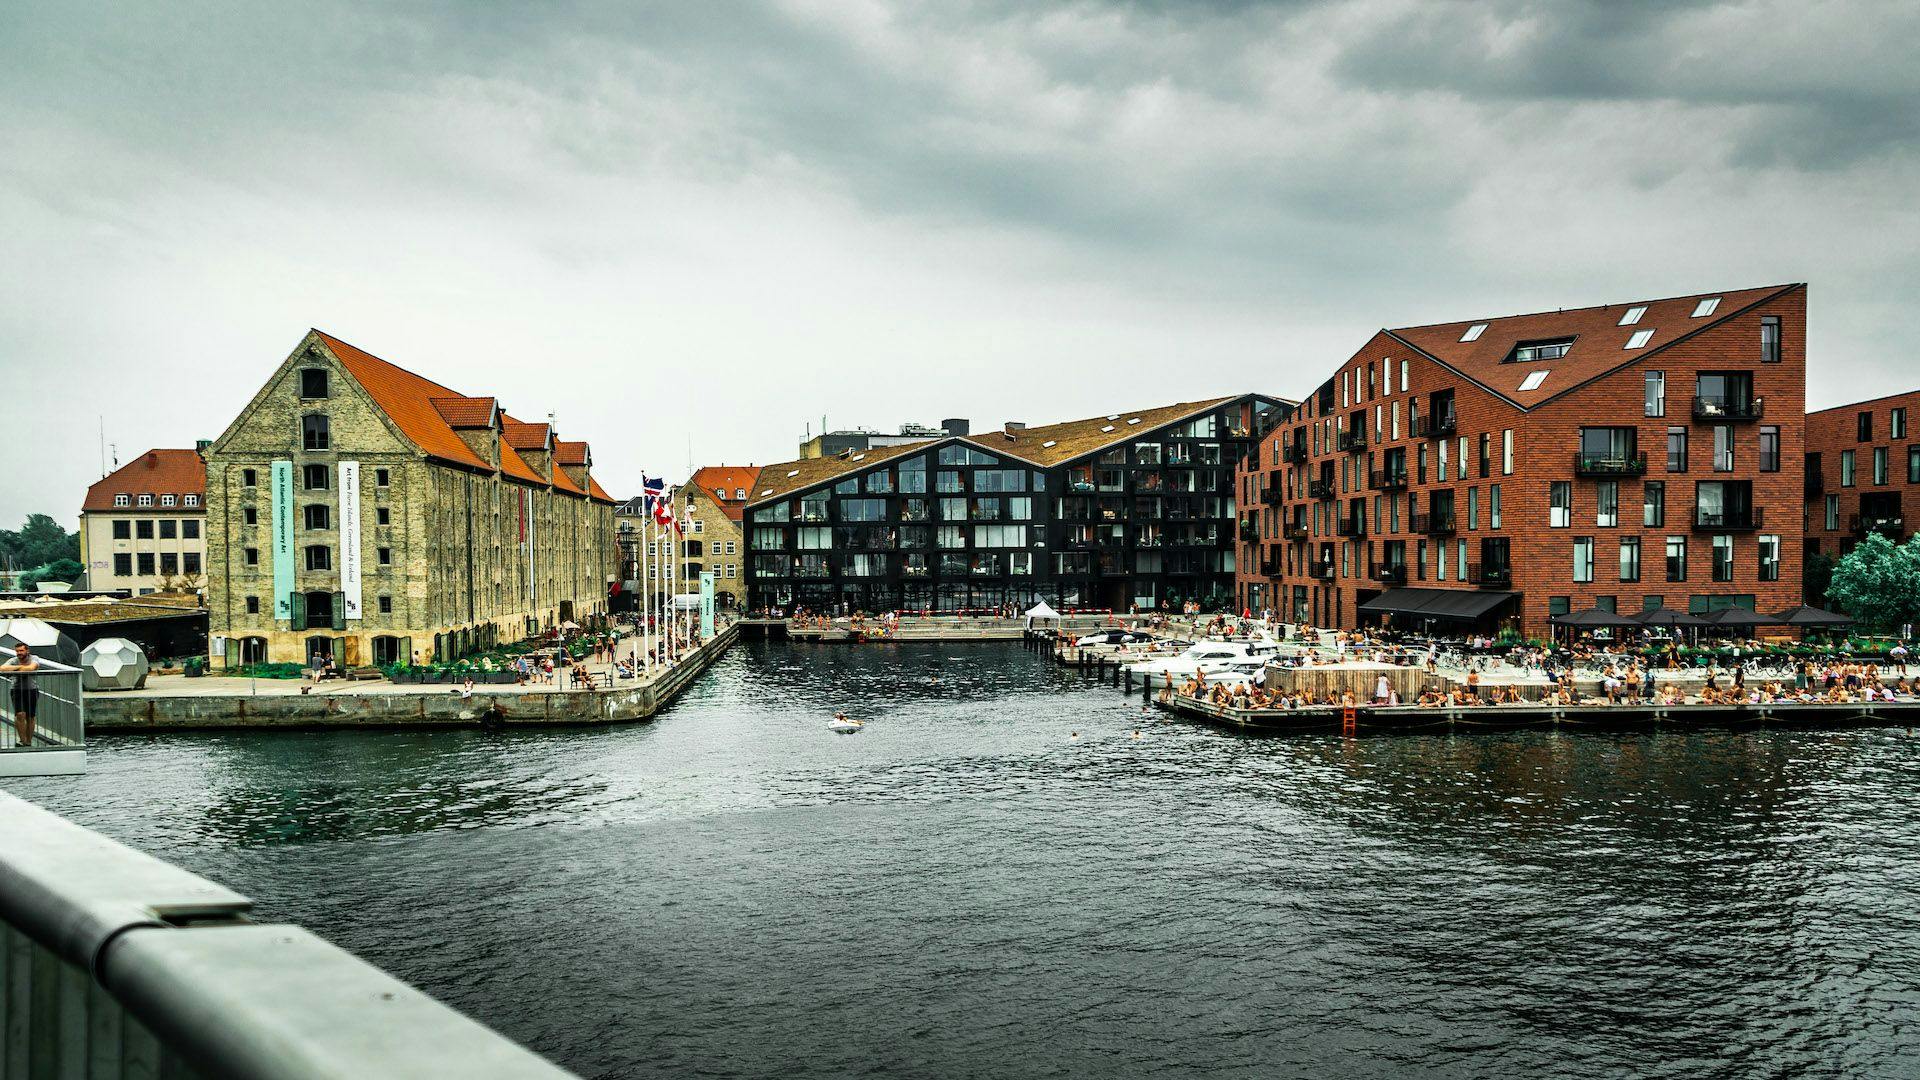 Odwiedź kulturalny Christianshavn podczas prywatnej pieszej wycieczki